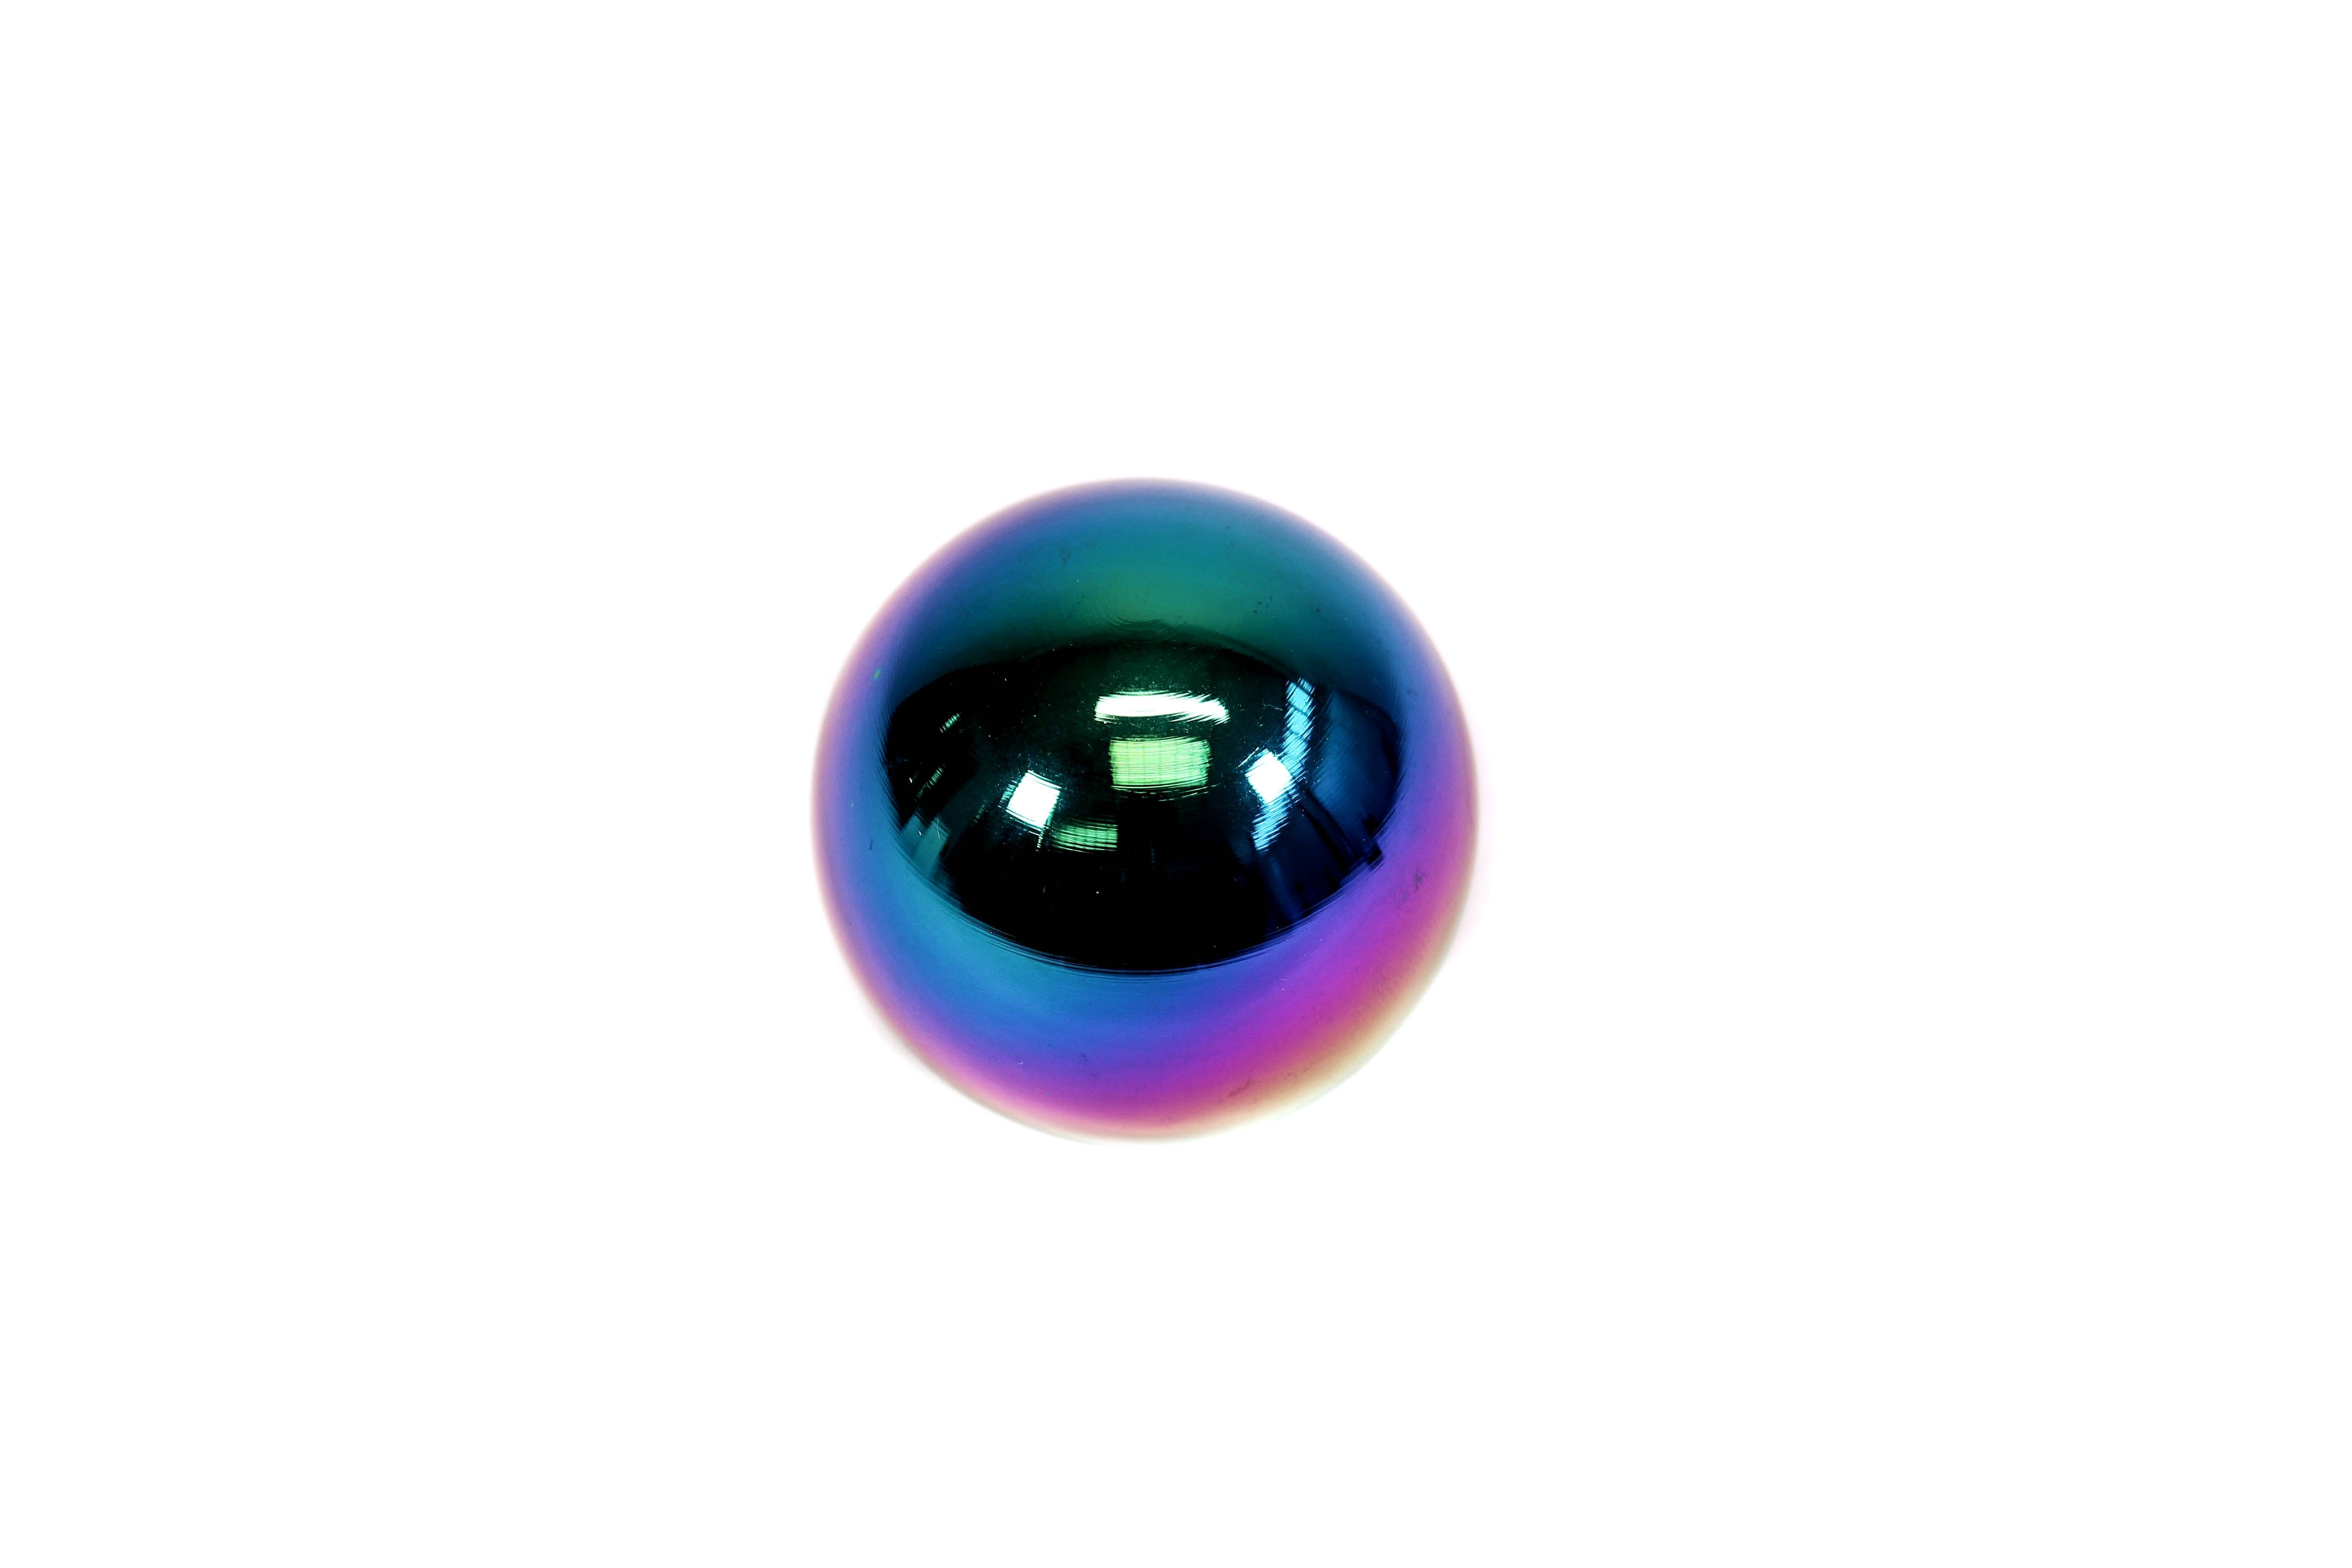 Private Label Mfg. Spherical Shift Knob (290 GRAMS)